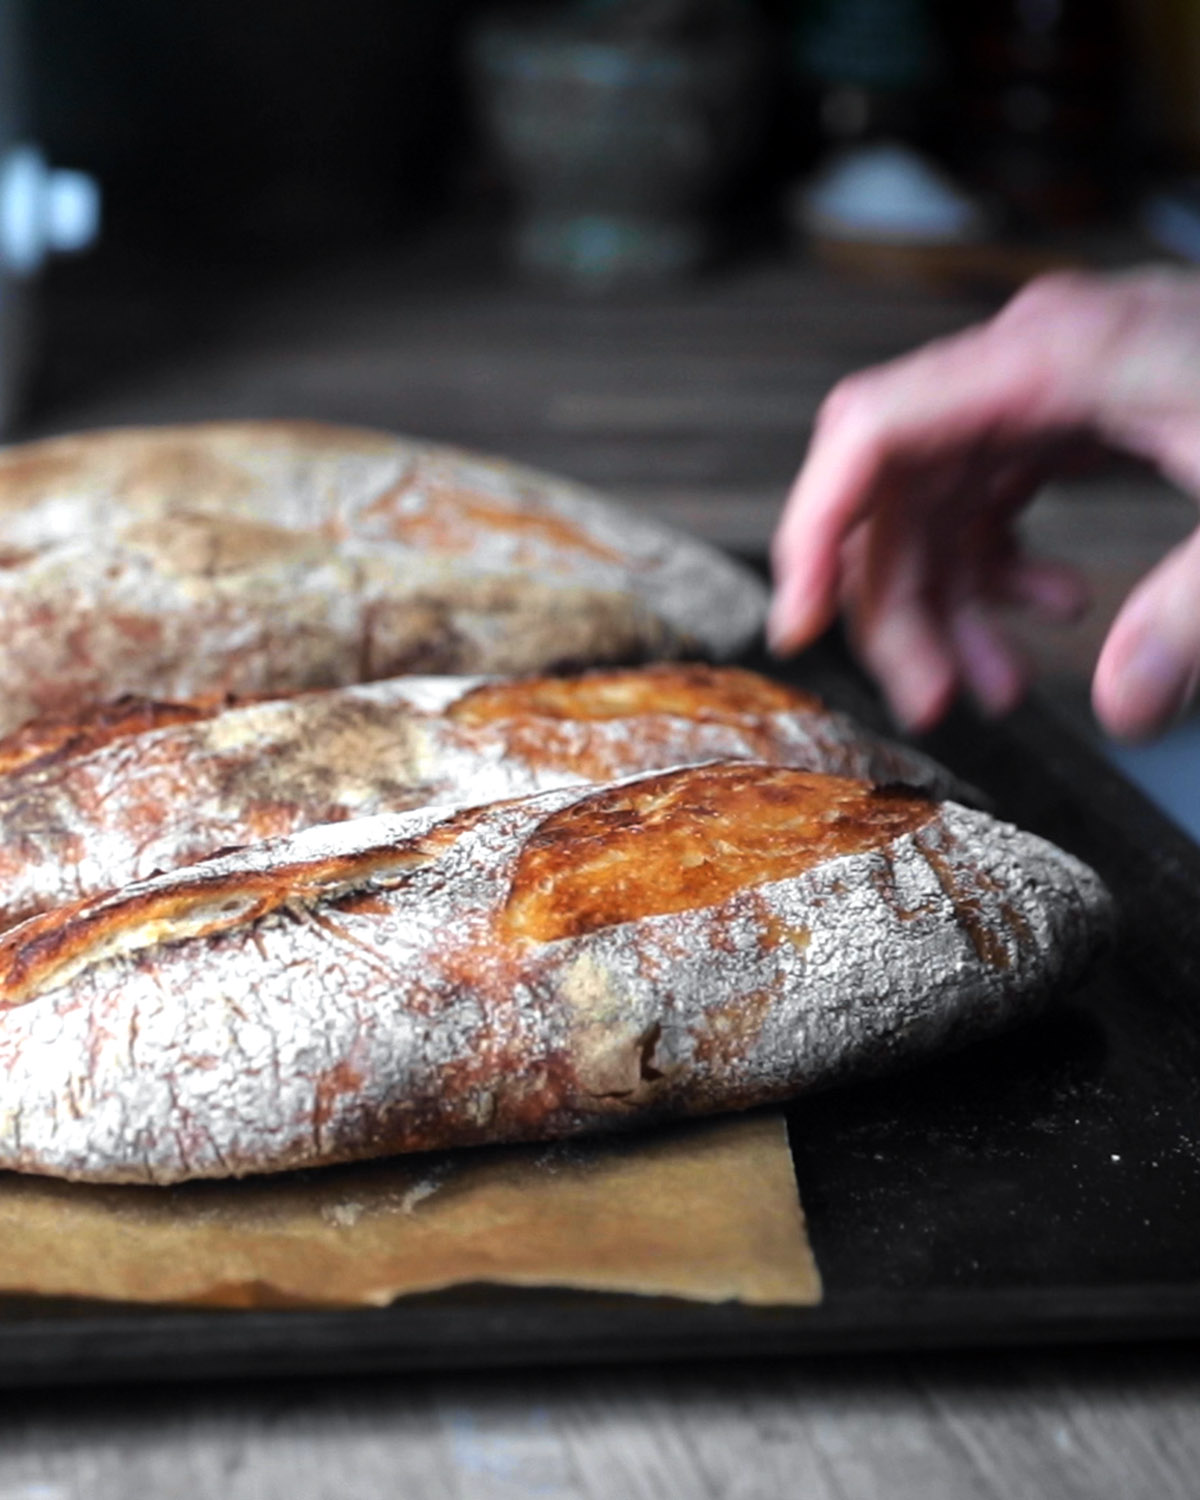 Chef Martino Sourdough Bread recipe